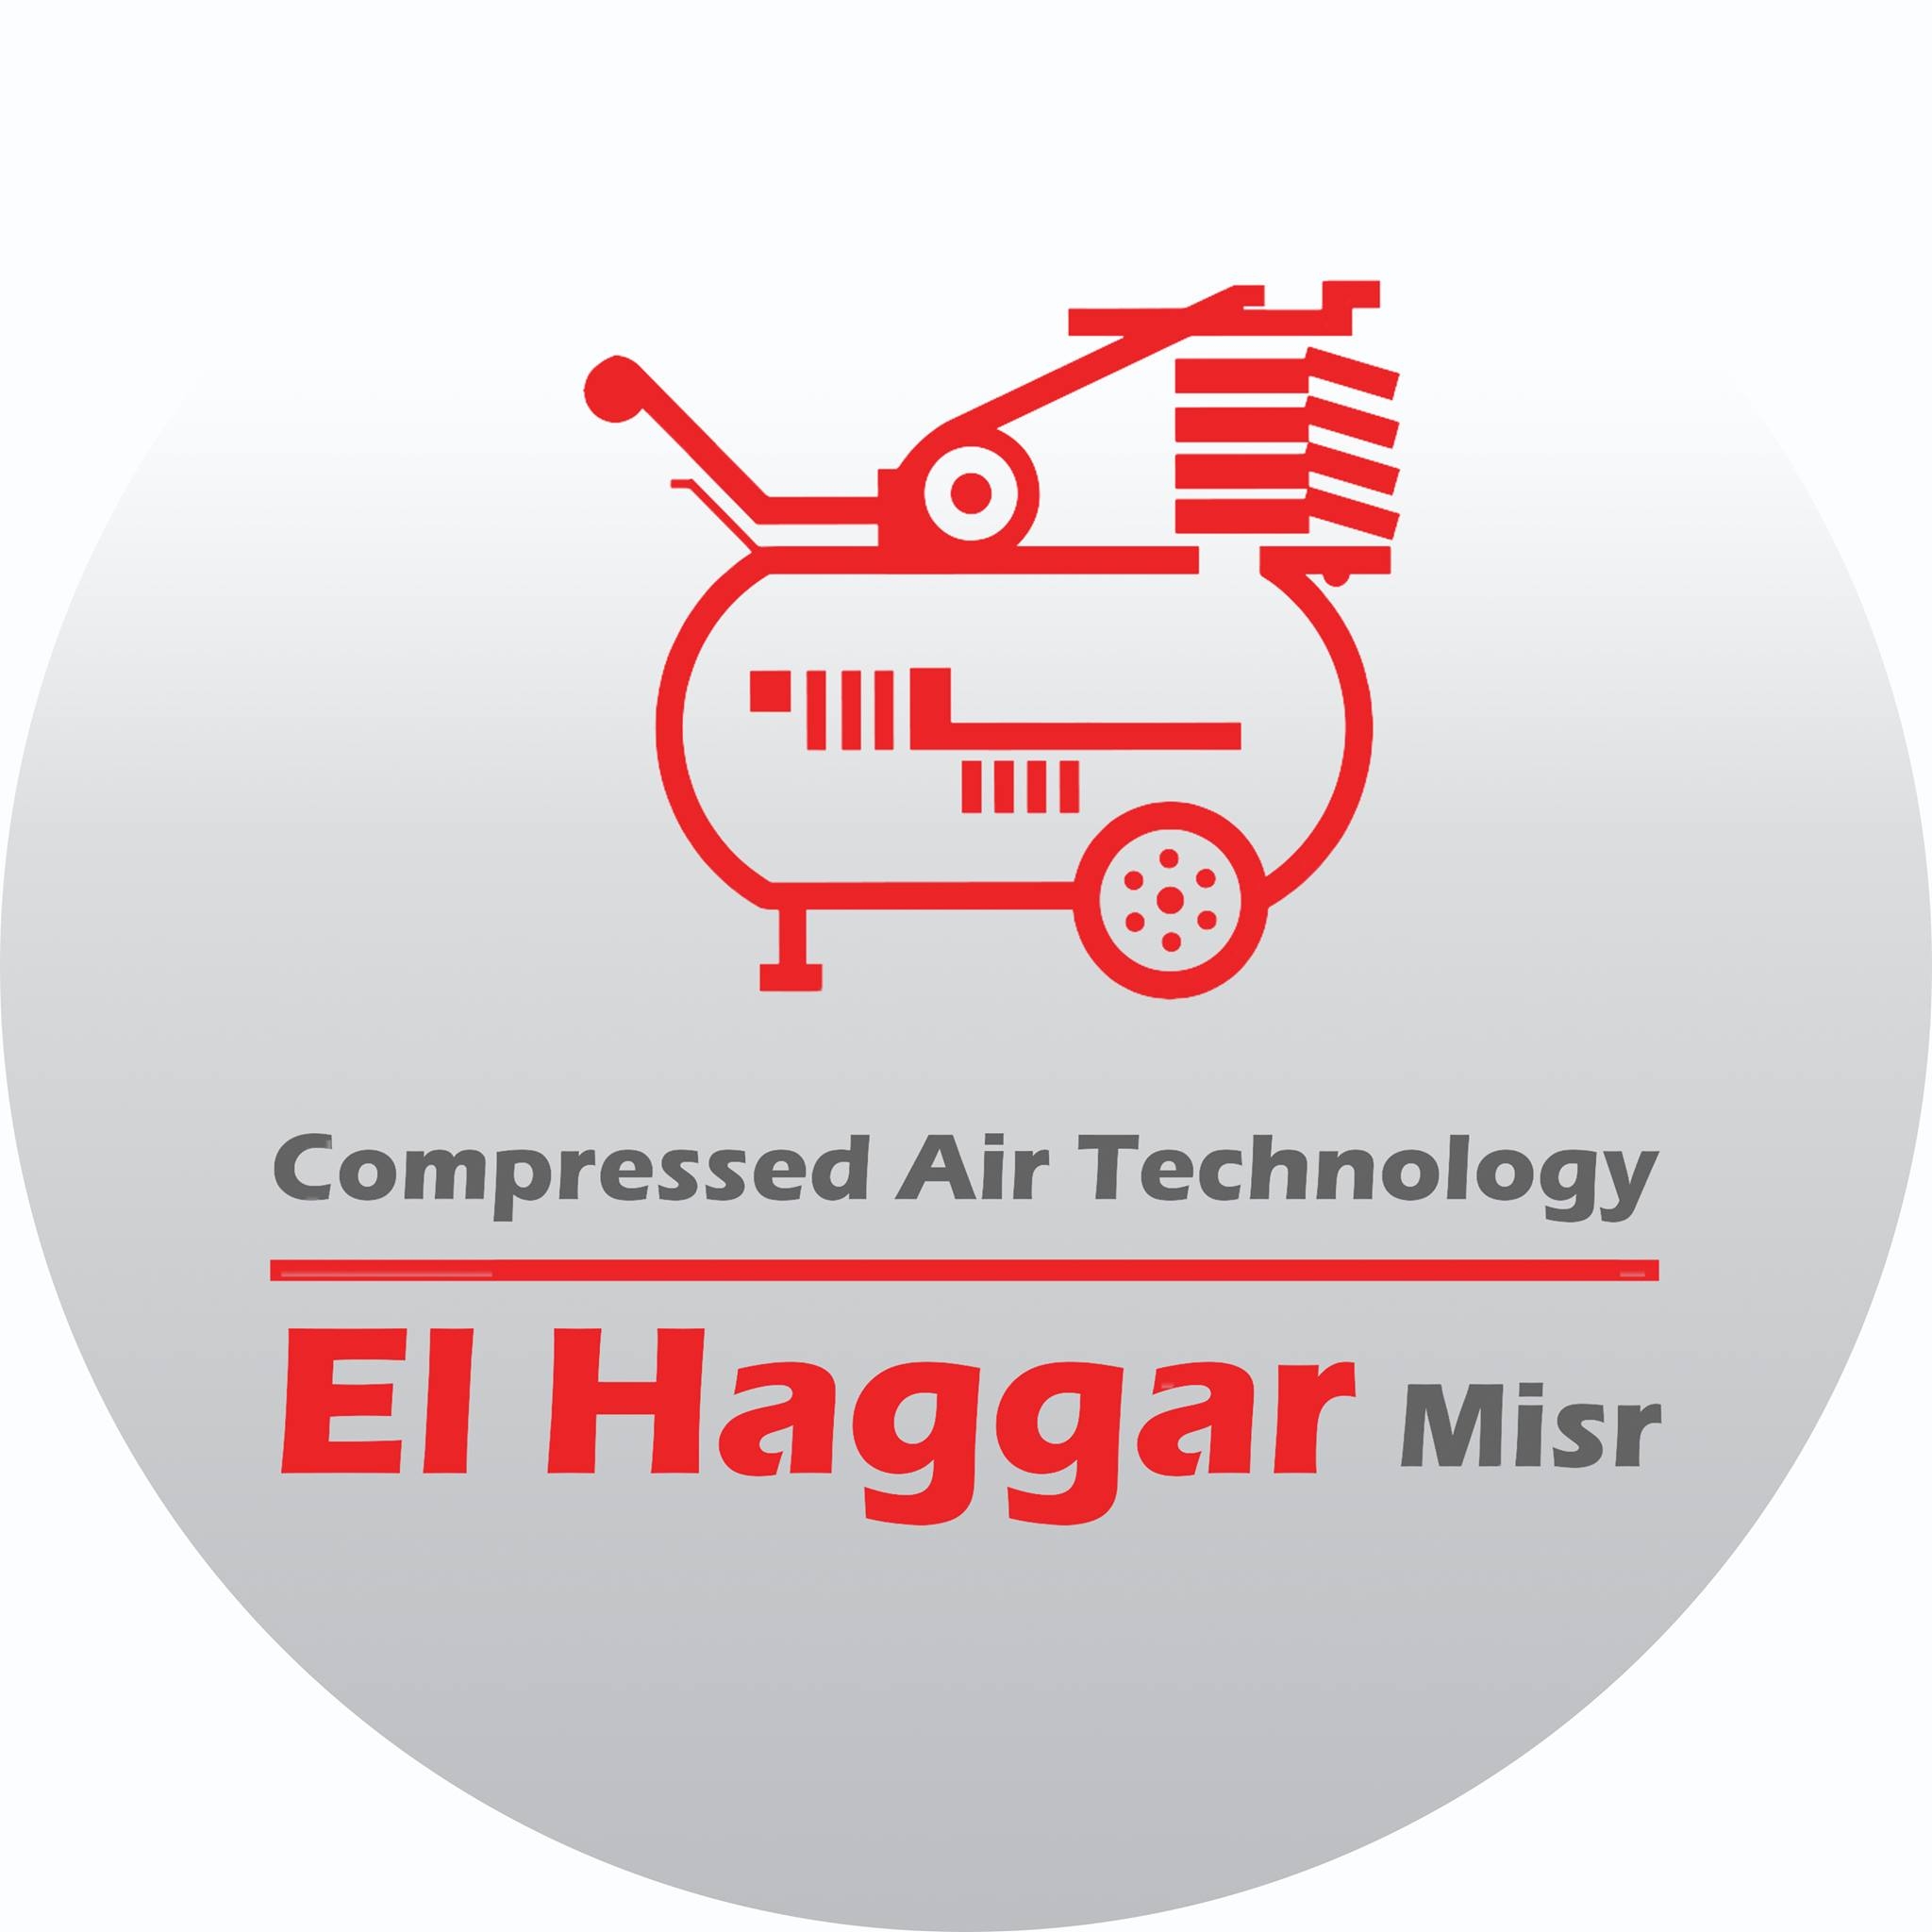 Al-Haggar Company